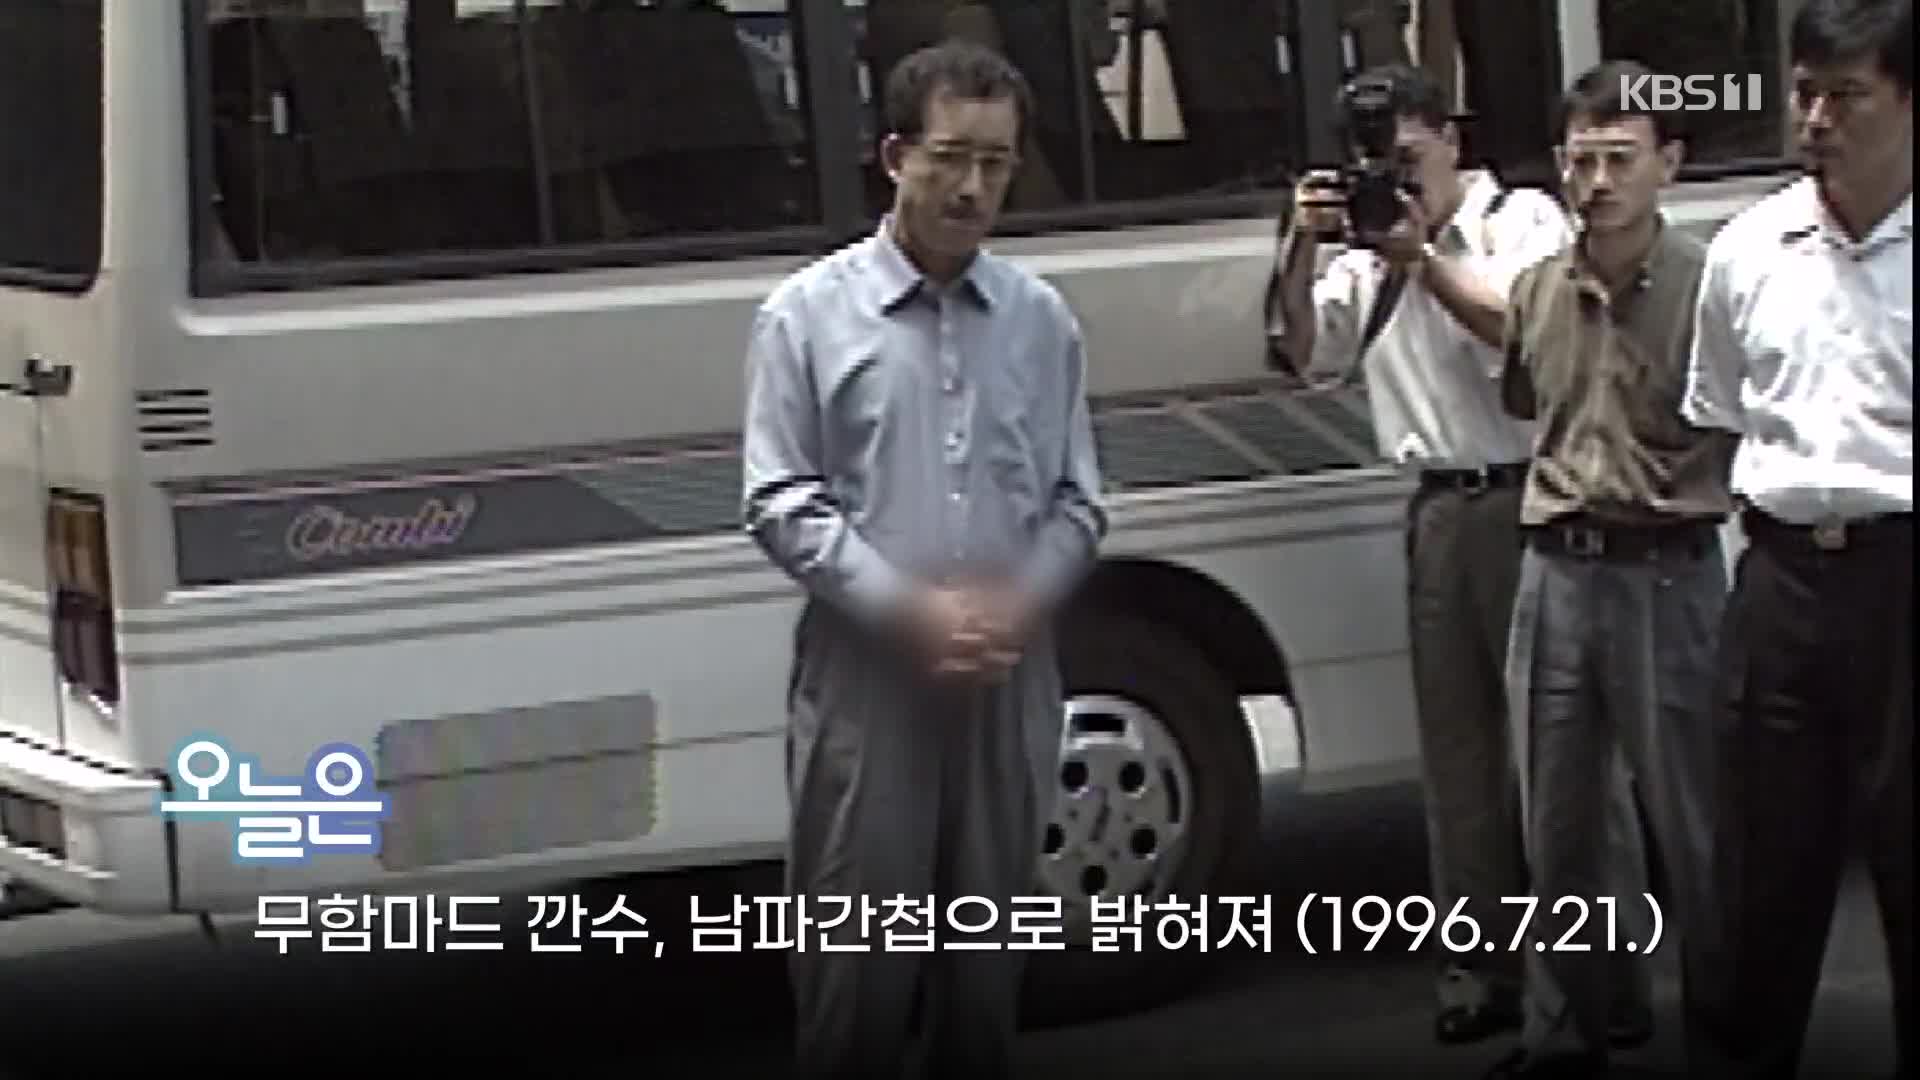 [오늘은] 무함마드 깐수, 남파간첩으로 밝혀져 (1996.7.21.)